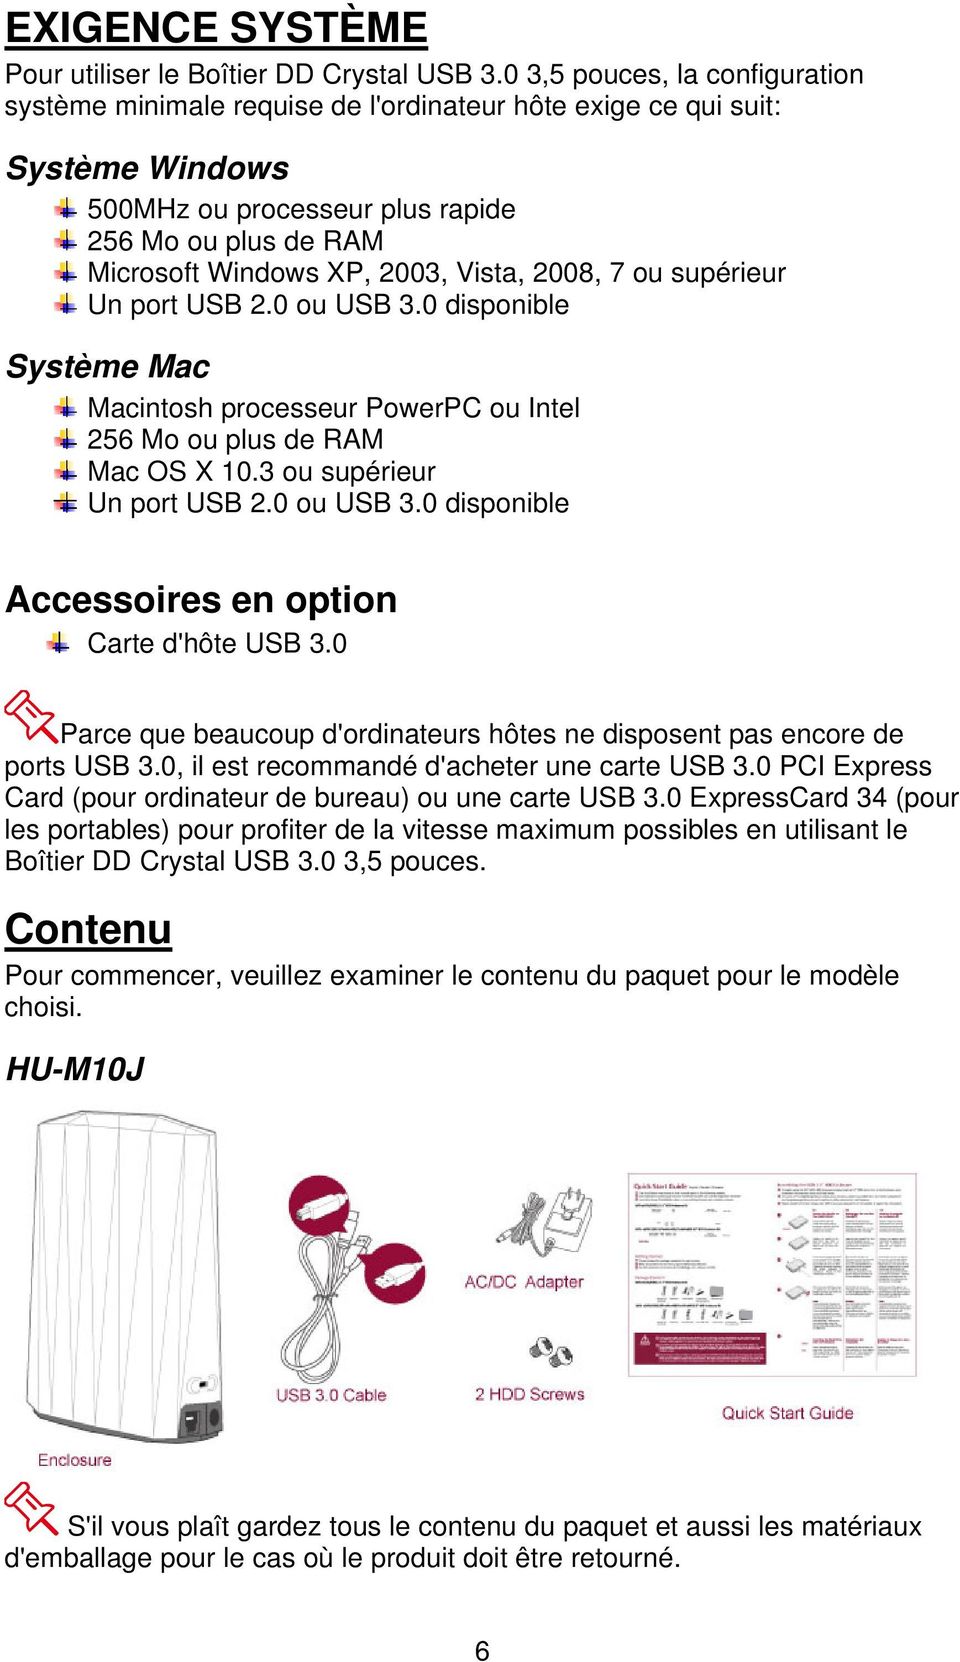 Vista, 2008, 7 ou supérieur Un port USB 2.0 ou USB 3.0 disponible Système Mac Macintosh processeur PowerPC ou Intel 256 Mo ou plus de RAM Mac OS X 10.3 ou supérieur Un port USB 2.0 ou USB 3.0 disponible Accessoires en option Carte d'hôte USB 3.